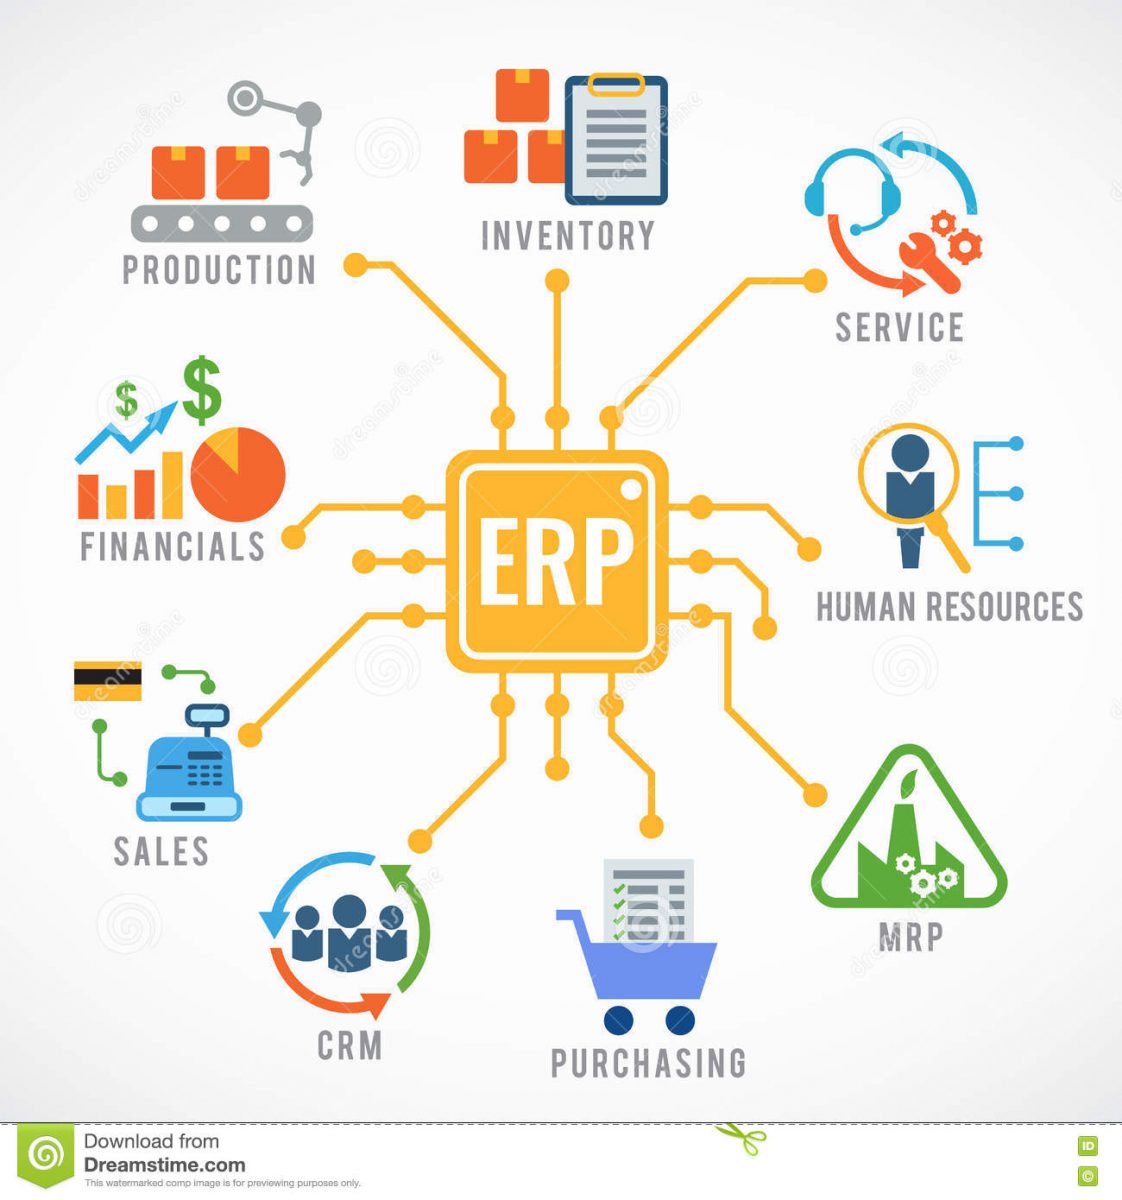 Mengenal Modul Sistem ERP yang Cocok untuk Bisnis Anda